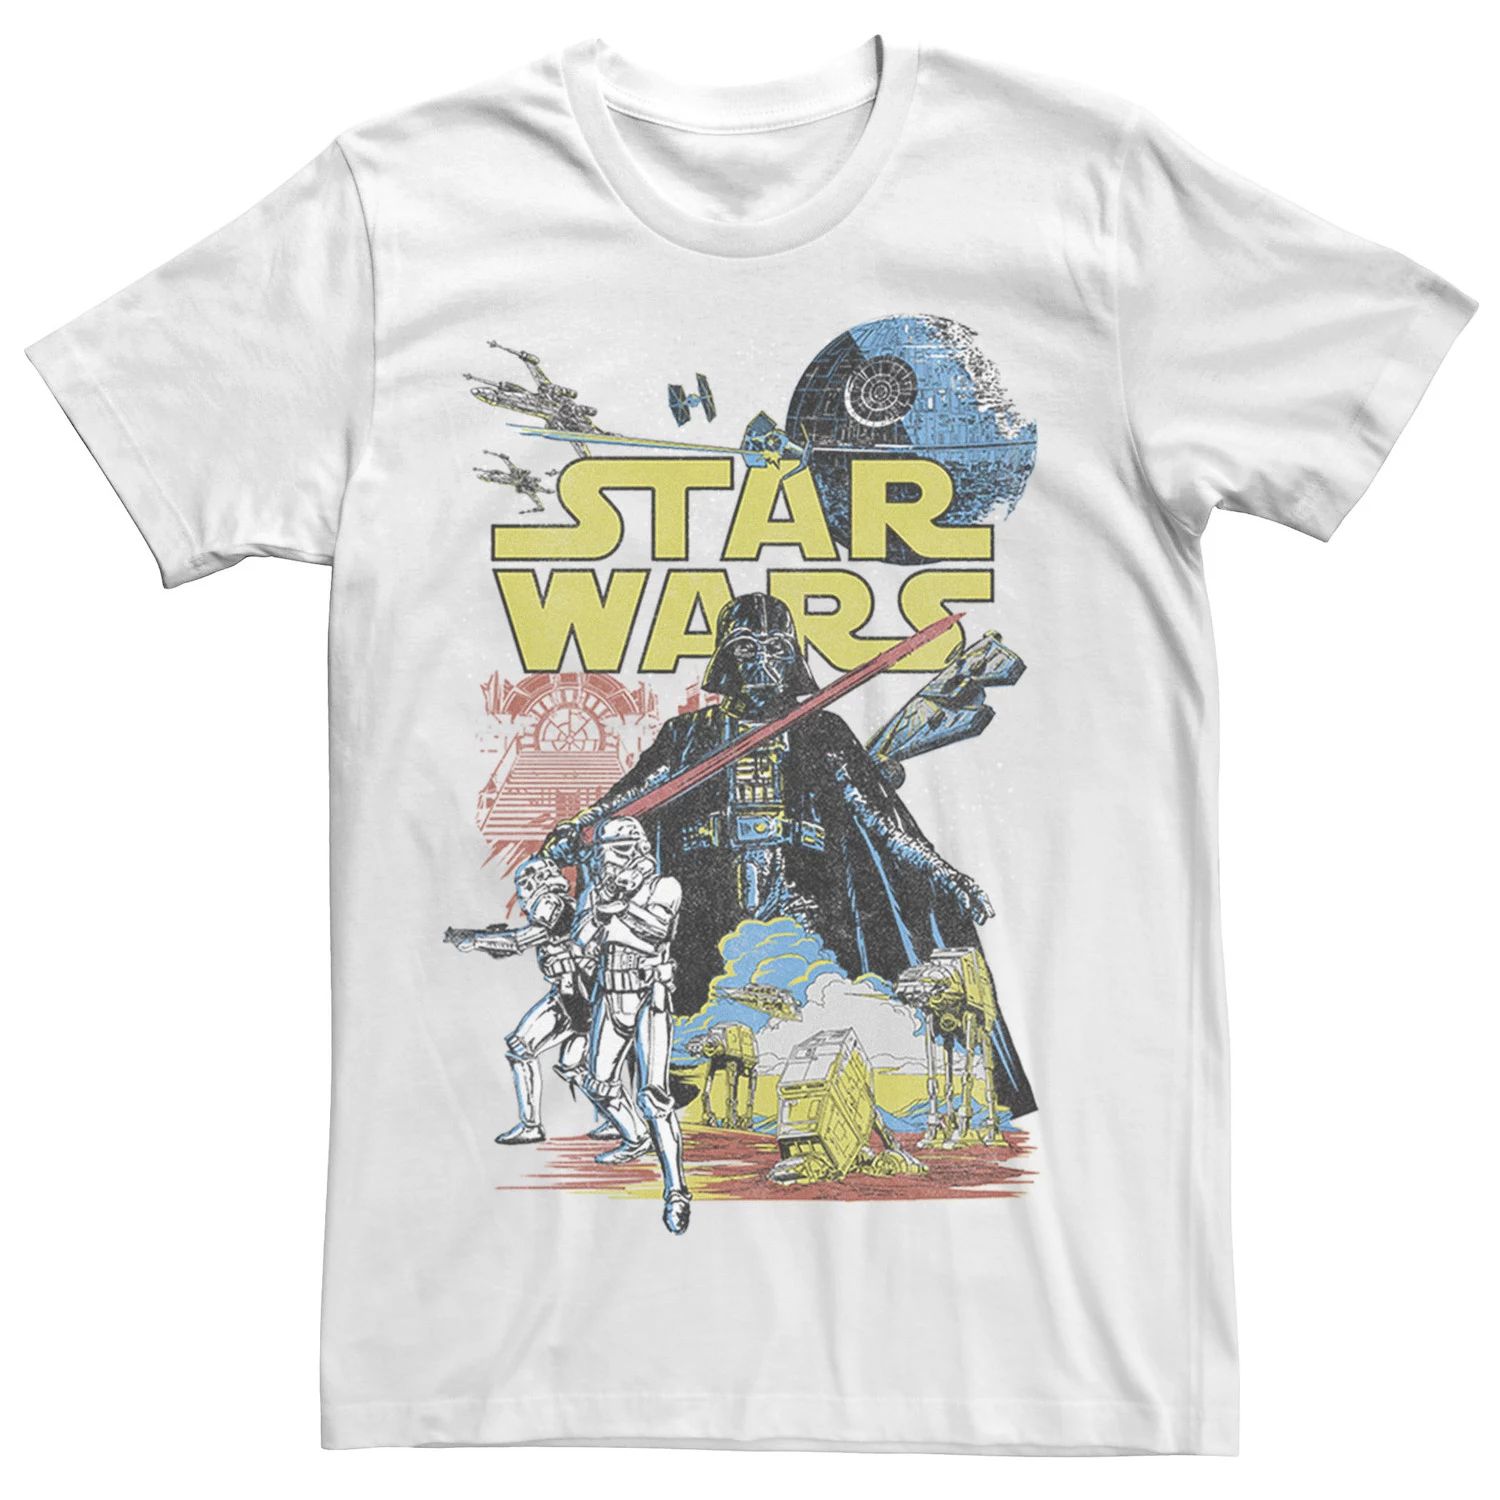 Мужская классическая футболка с графическим плакатом Rebel, White Star Wars, белый мужская классическая футболка с графическим плакатом rebel white star wars белый